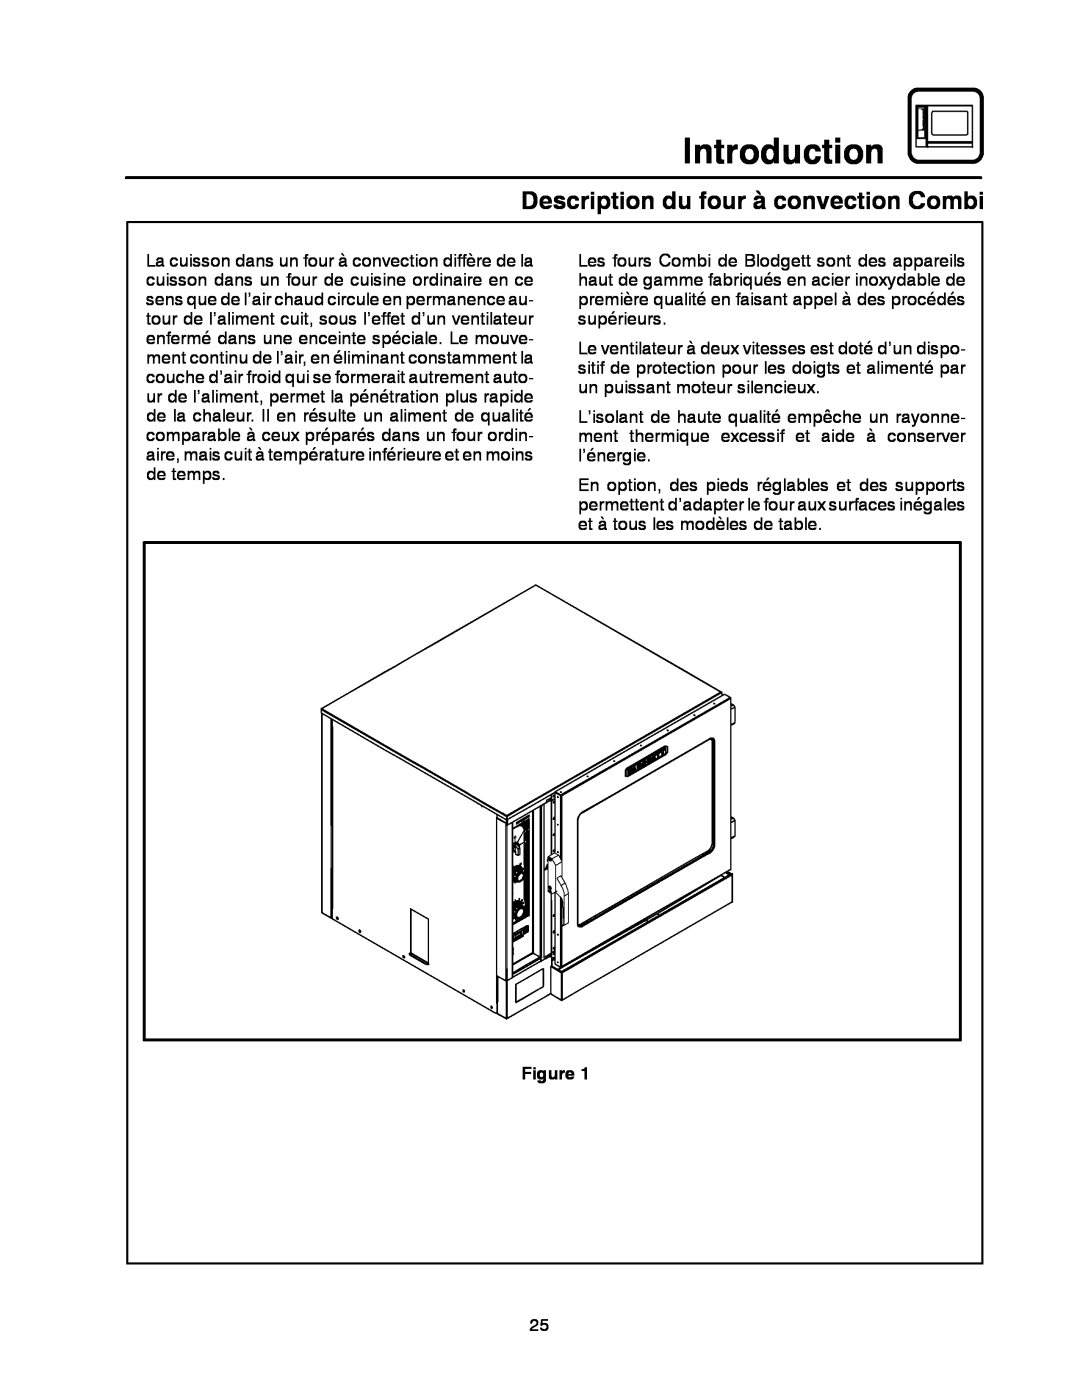 Blodgett CNV14E, CNV14G manual Description du four à convection Combi, Introduction 